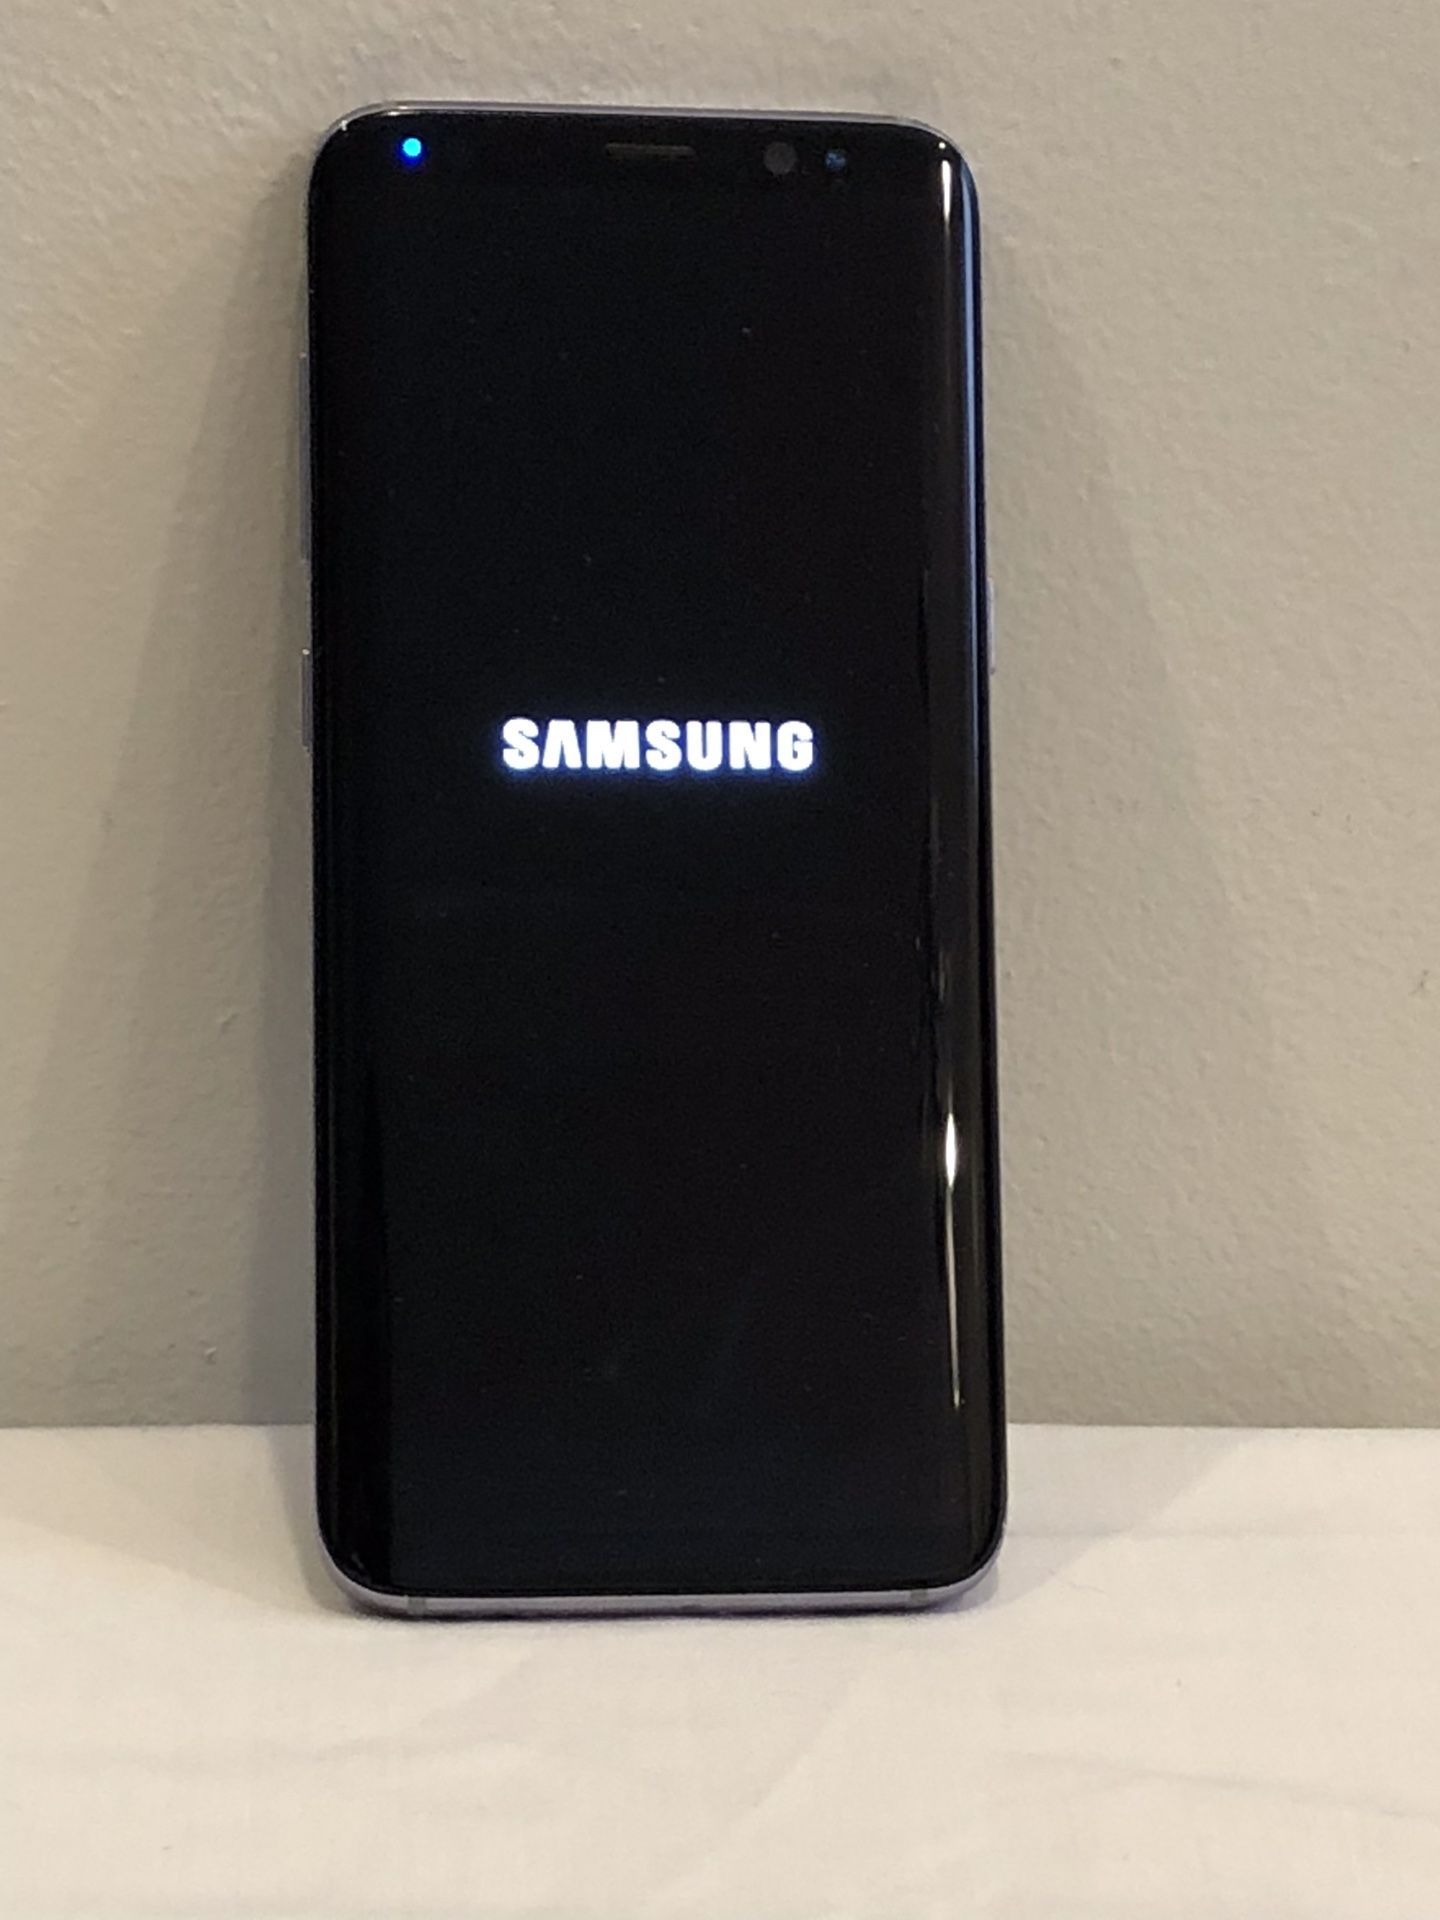 Samsung Galaxy 8 UNLOCKED